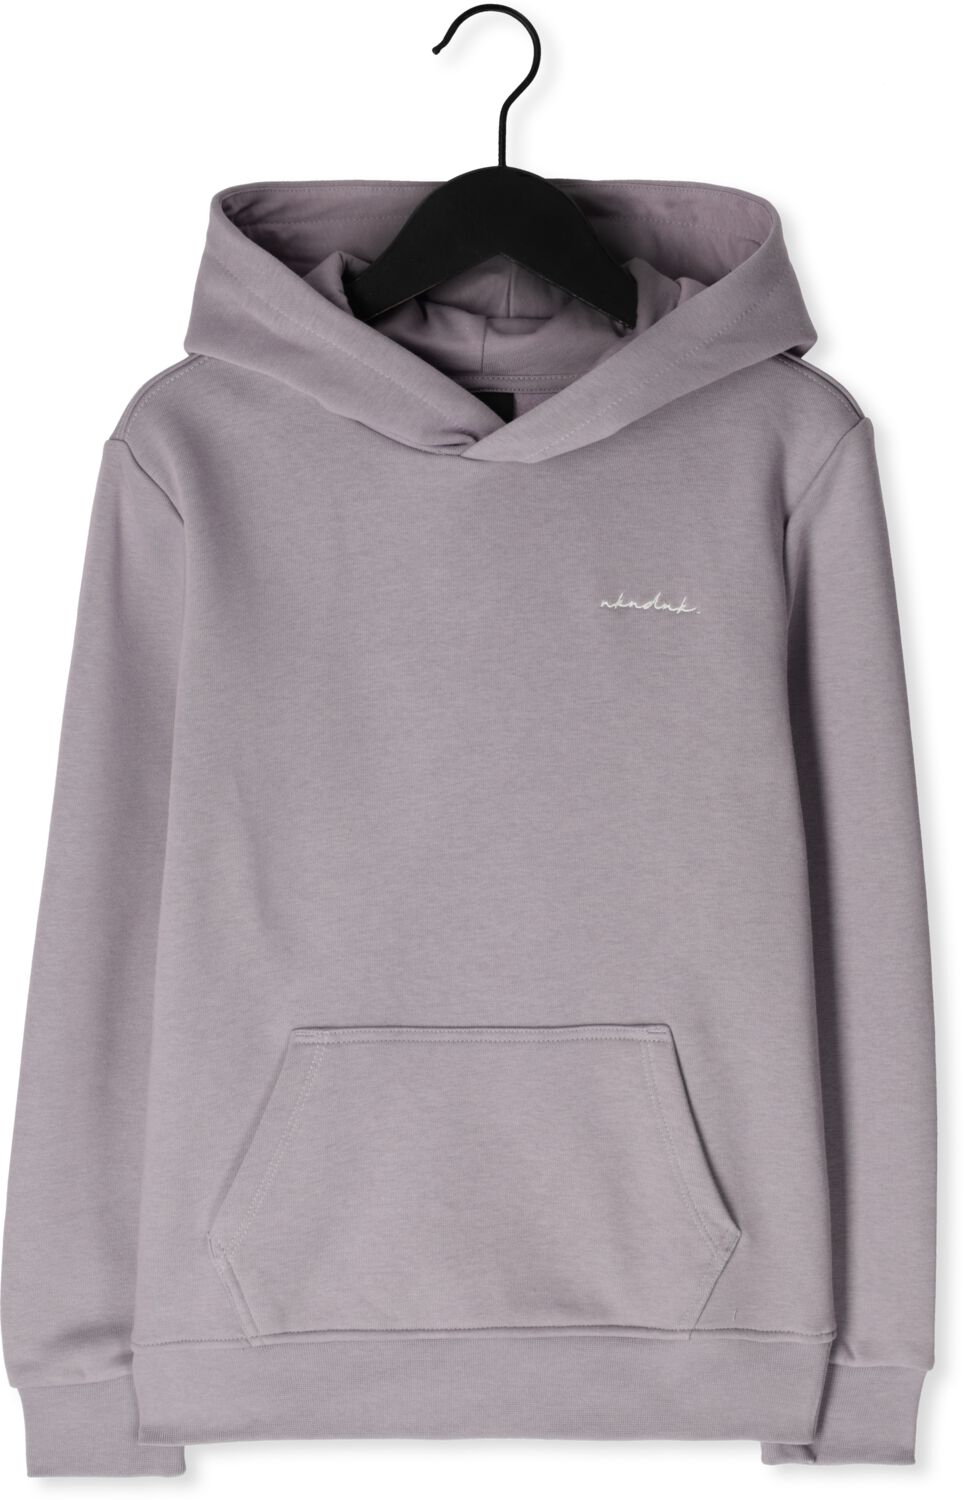 NIK&NIK hoodie Base Logo vergrijsd lila Sweater Paars Effen 164